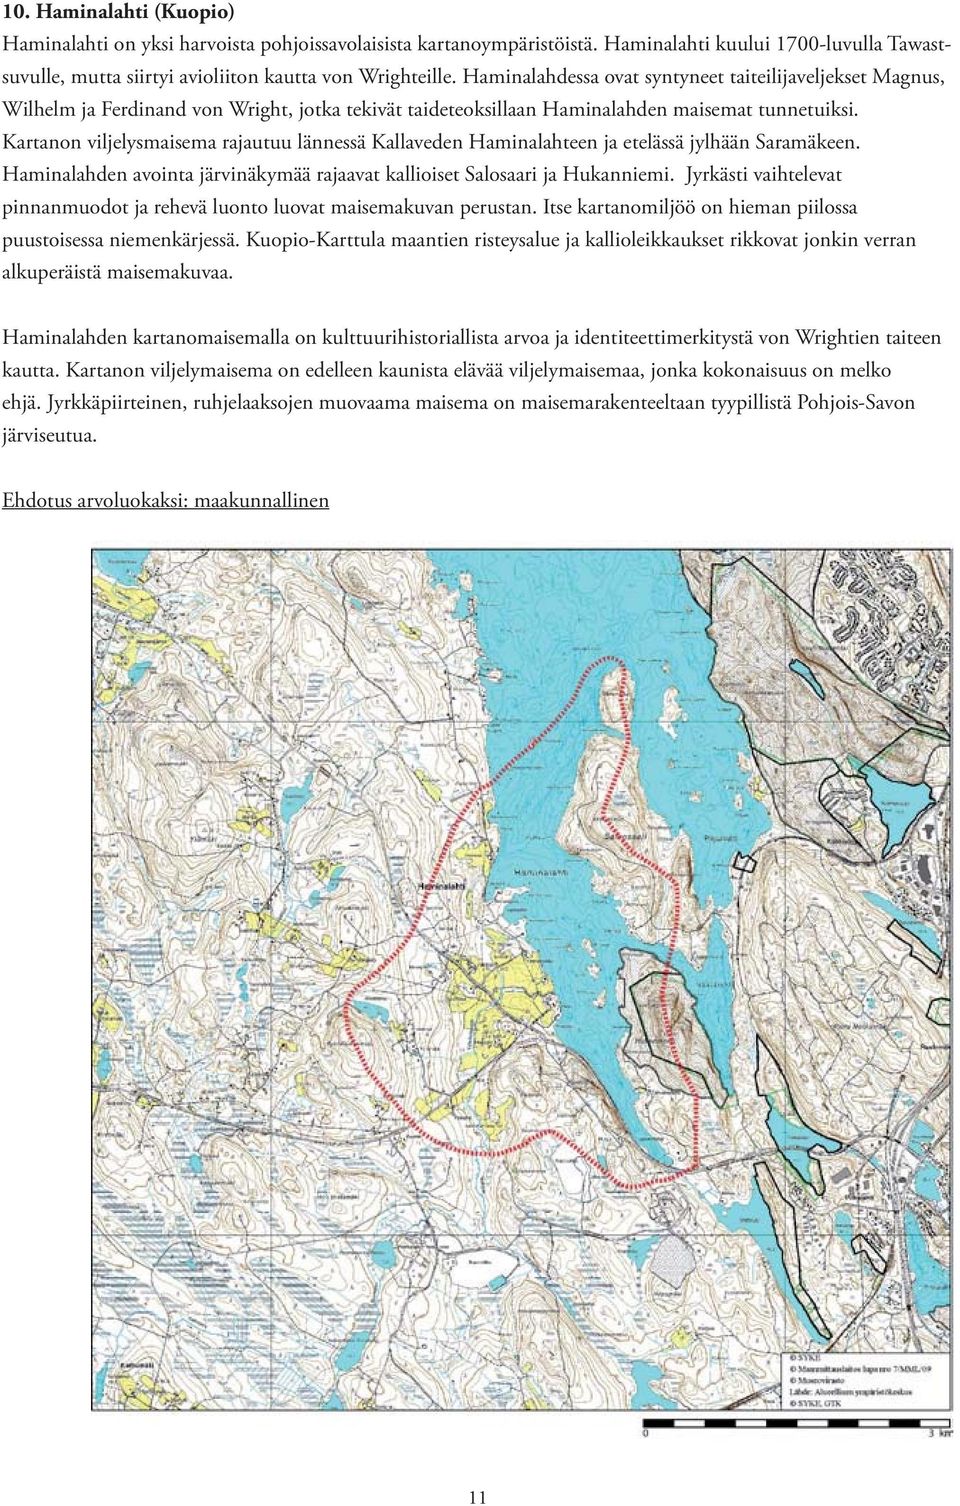 Kartanon viljelysmaisema rajautuu lännessä Kallaveden Haminalahteen ja etelässä jylhään Saramäkeen. Haminalahden avointa järvinäkymää rajaavat kallioiset Salosaari ja Hukanniemi.